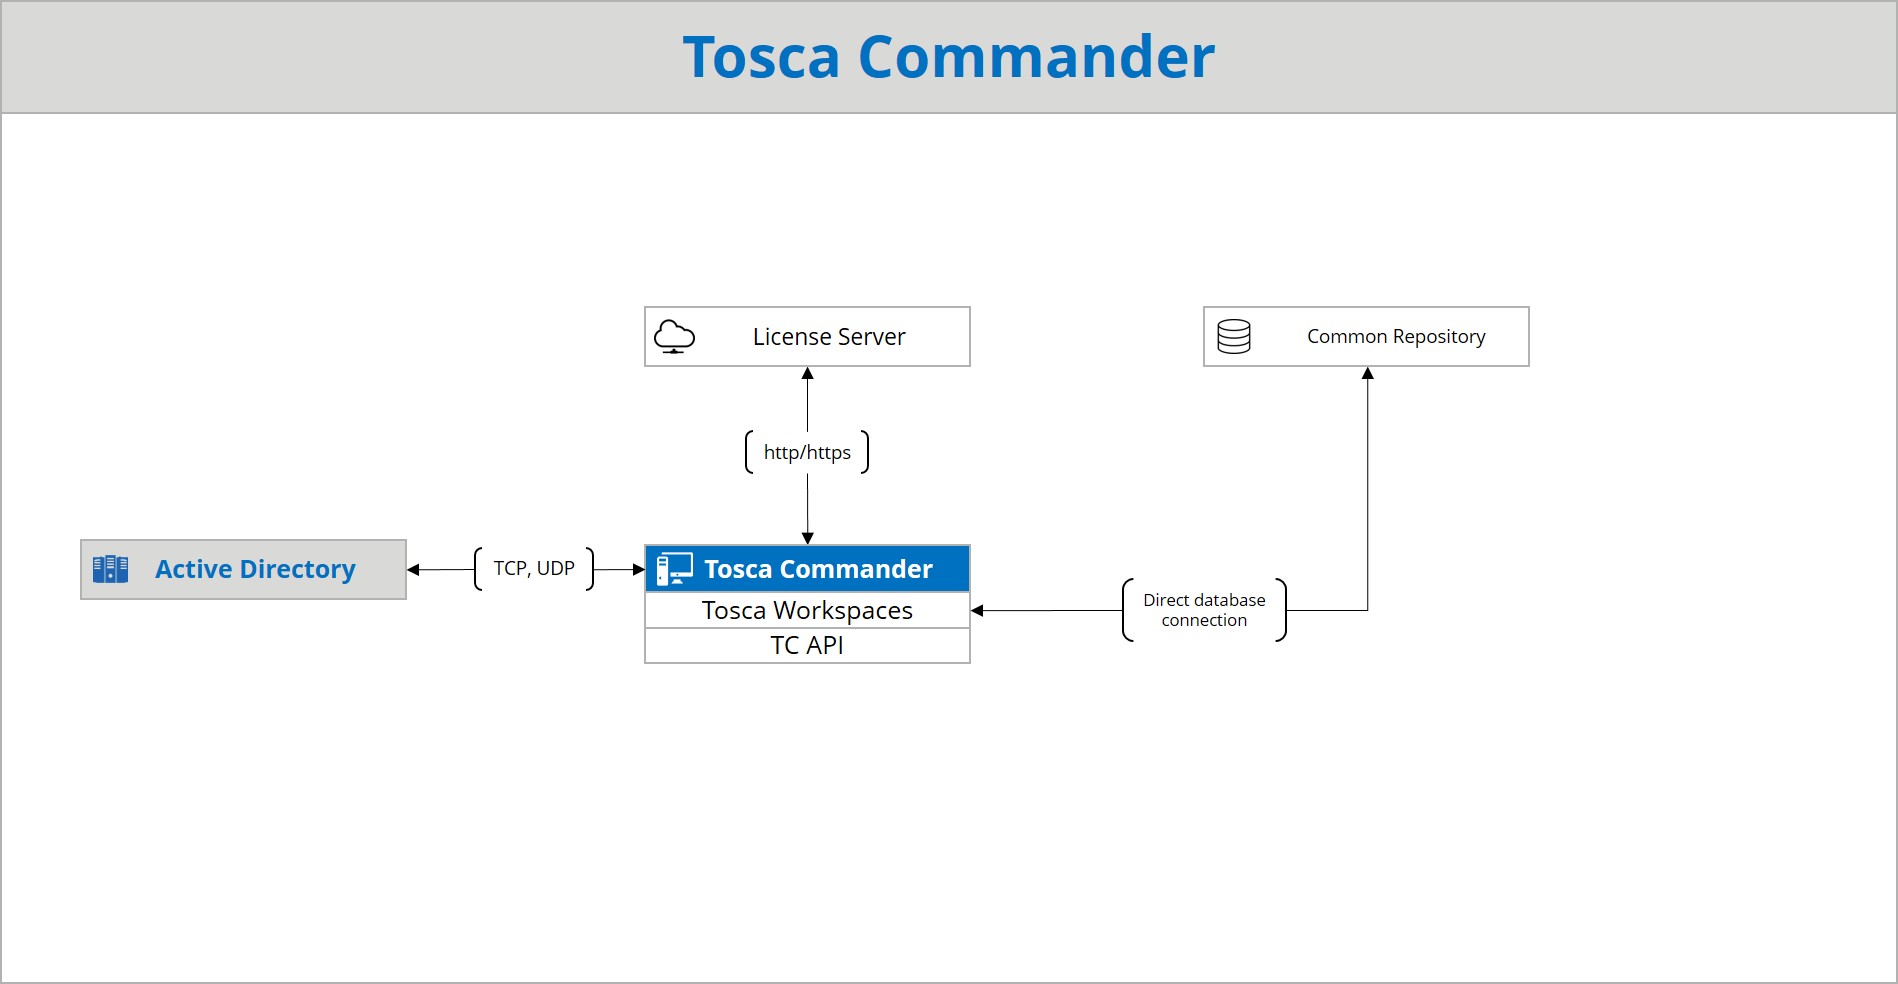 Tosca Commander - Architecture